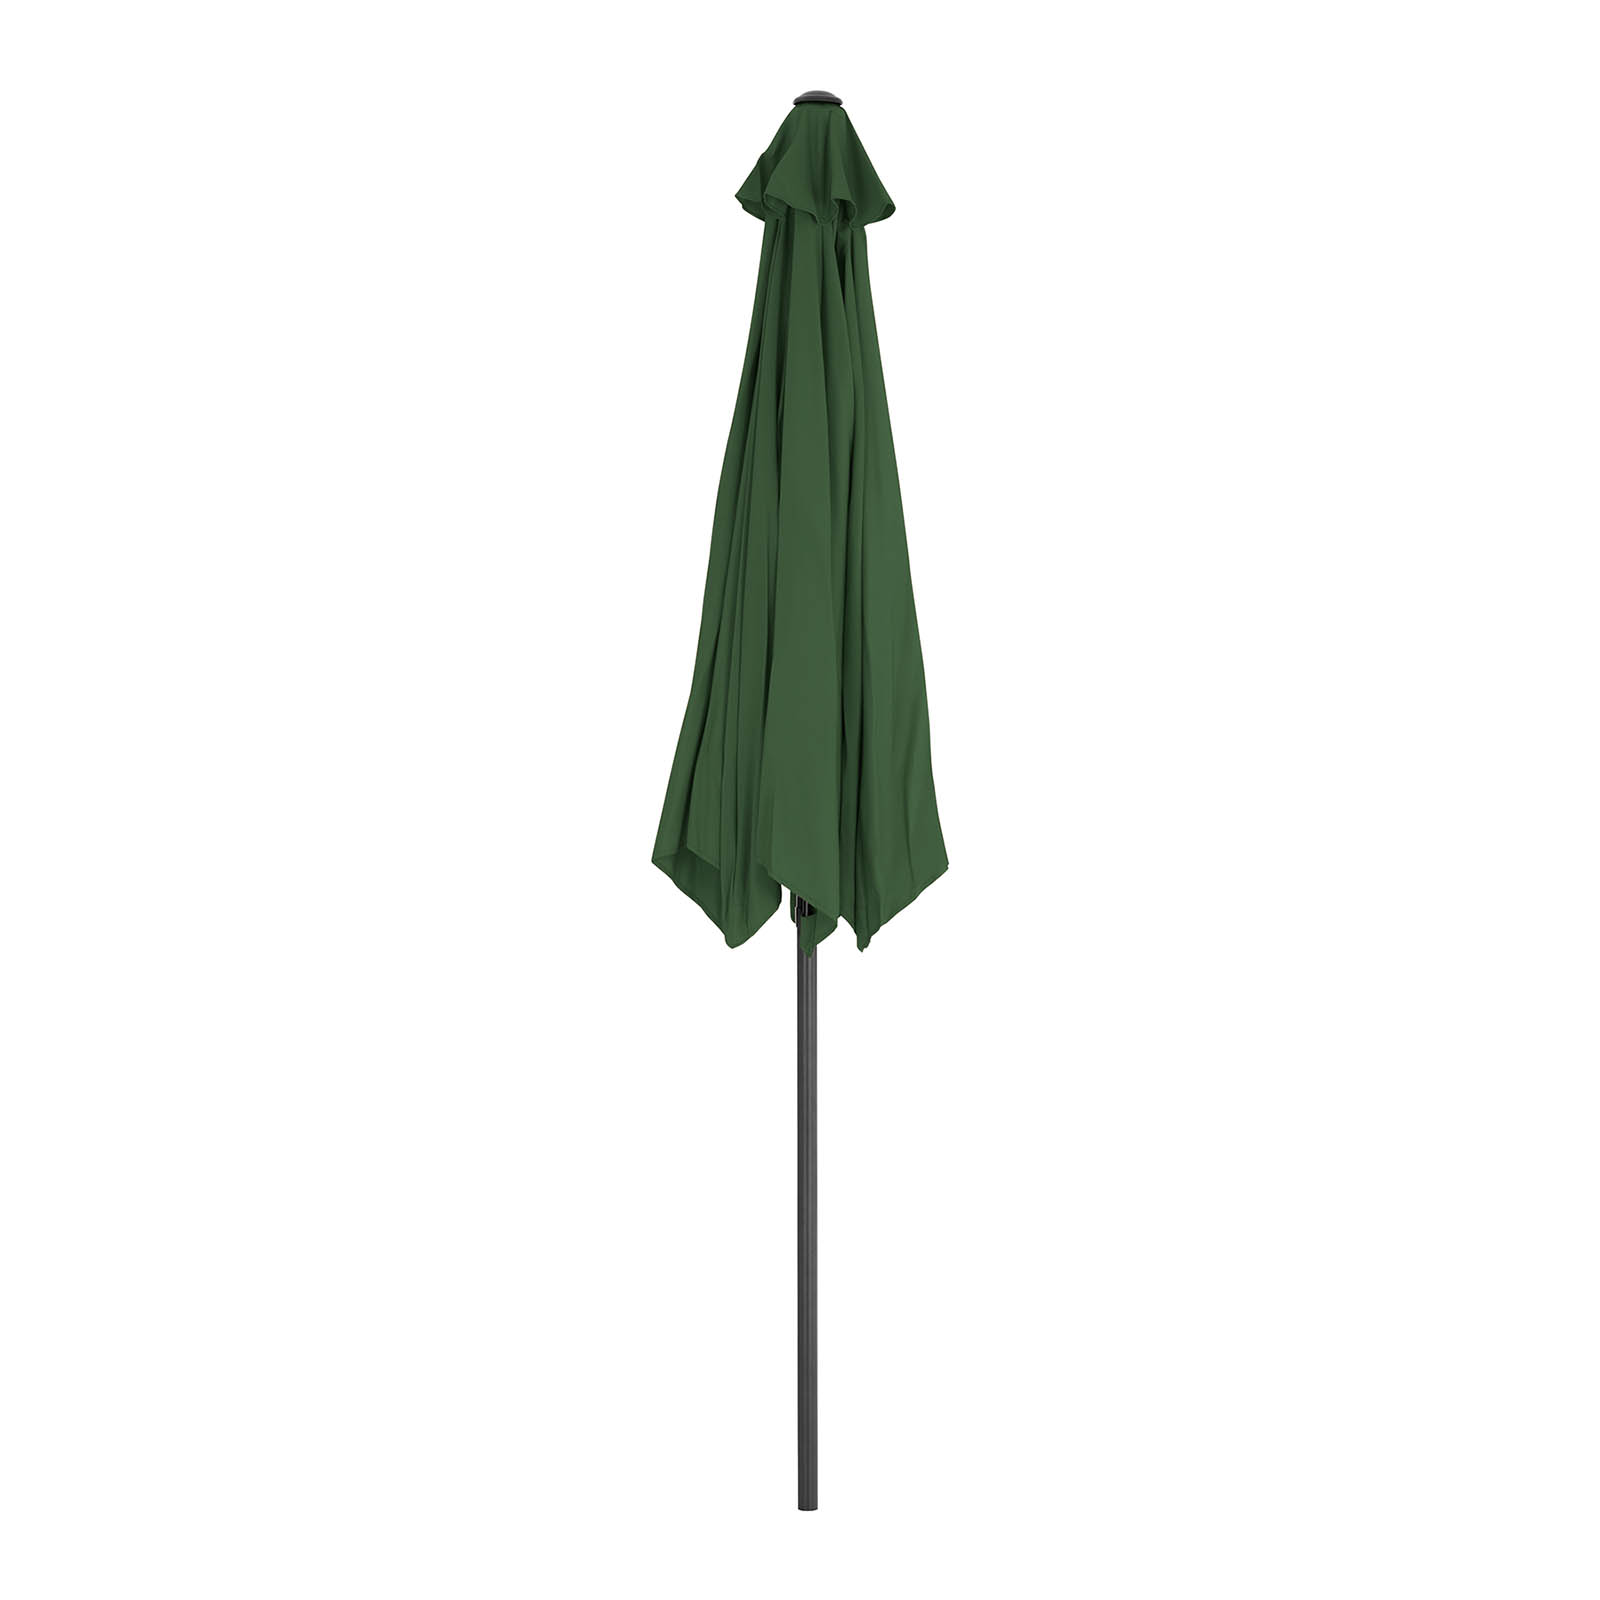 Sonnenschirm groß - grün - sechseckig - Ø 270 cm - neigbar